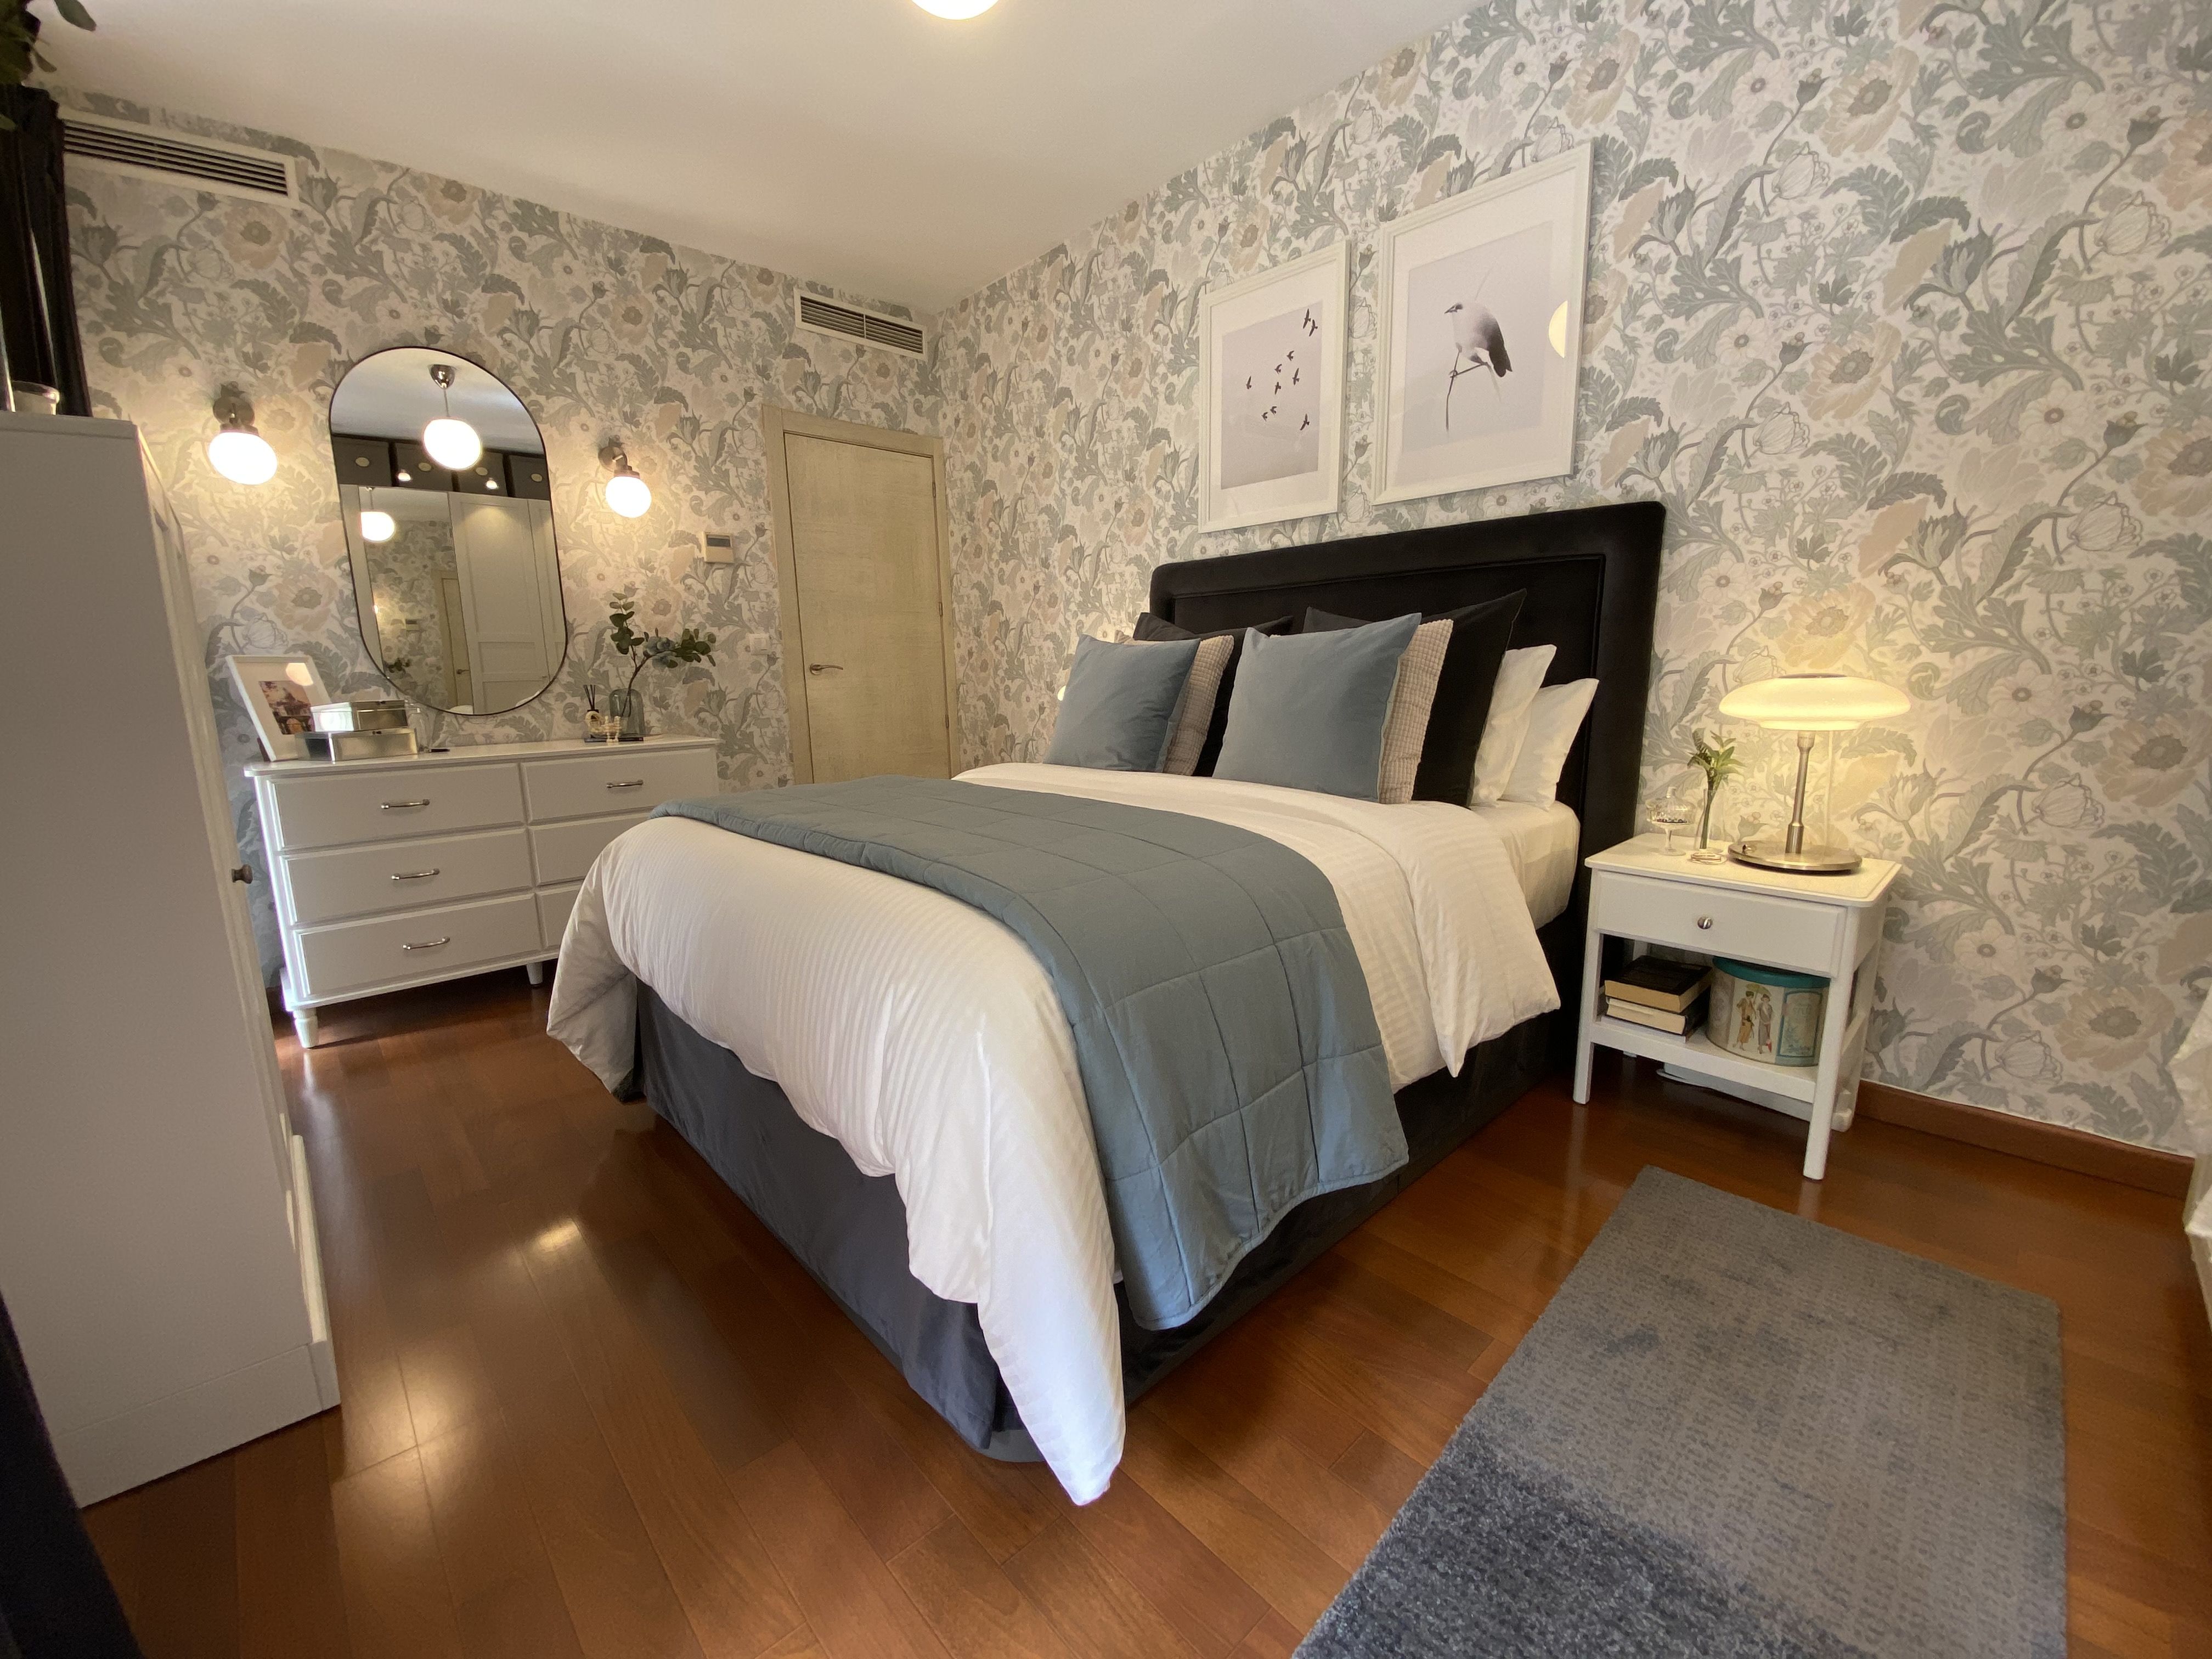 Un dormitorio y romántico con decoración de